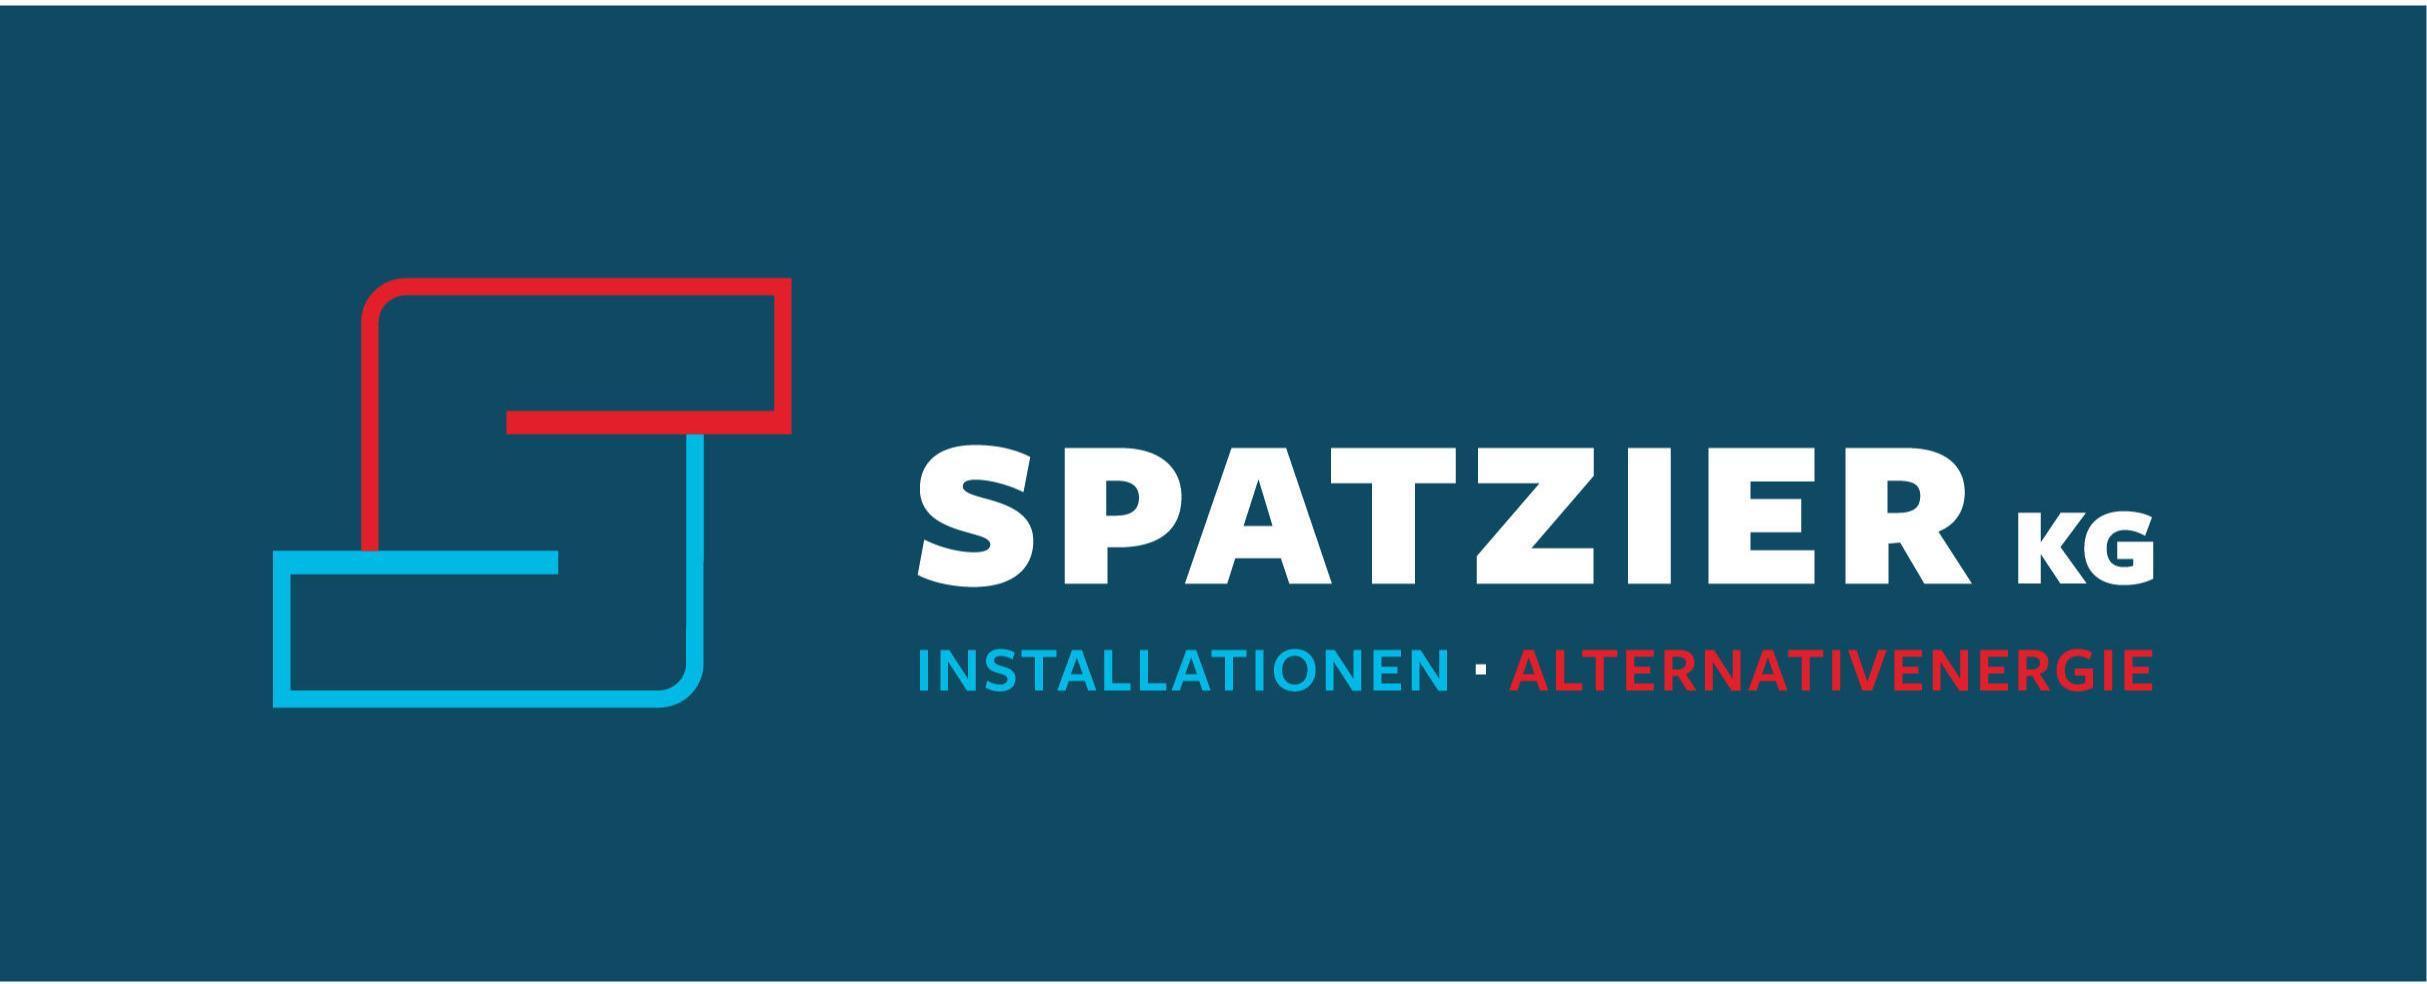 Logo Spatzier KG